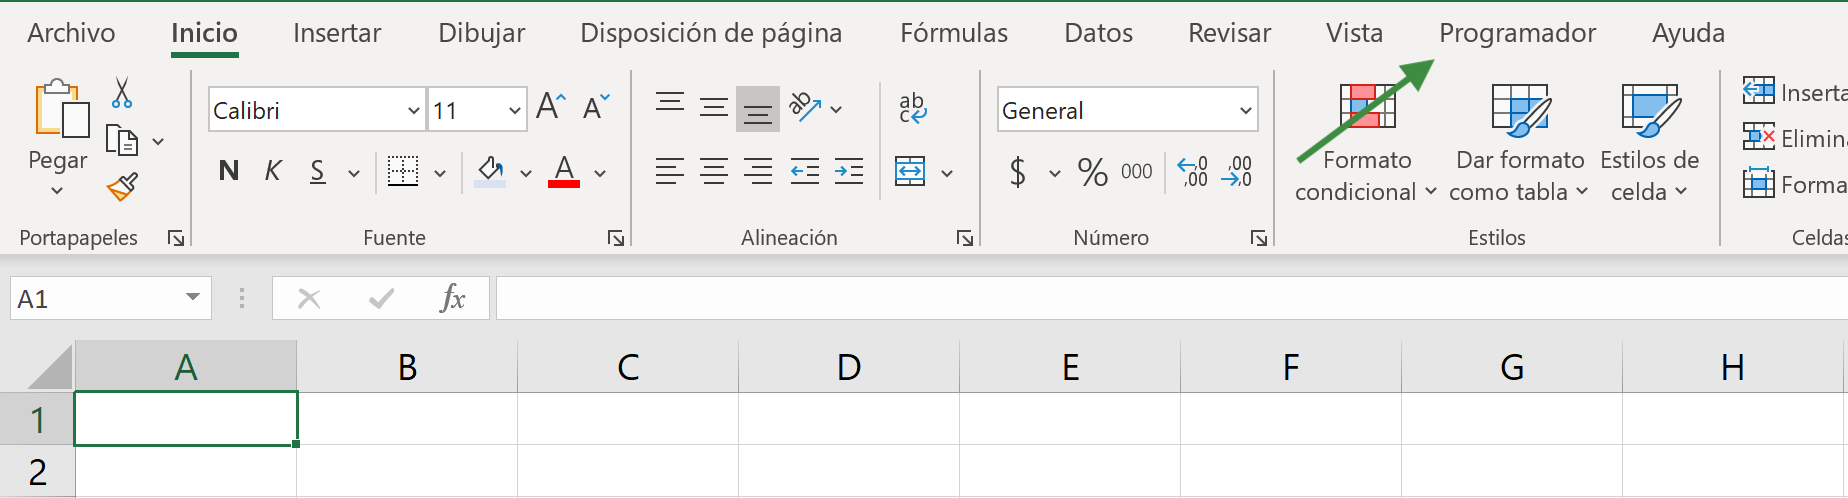 Vista de la Pestaña de Programador en Excel